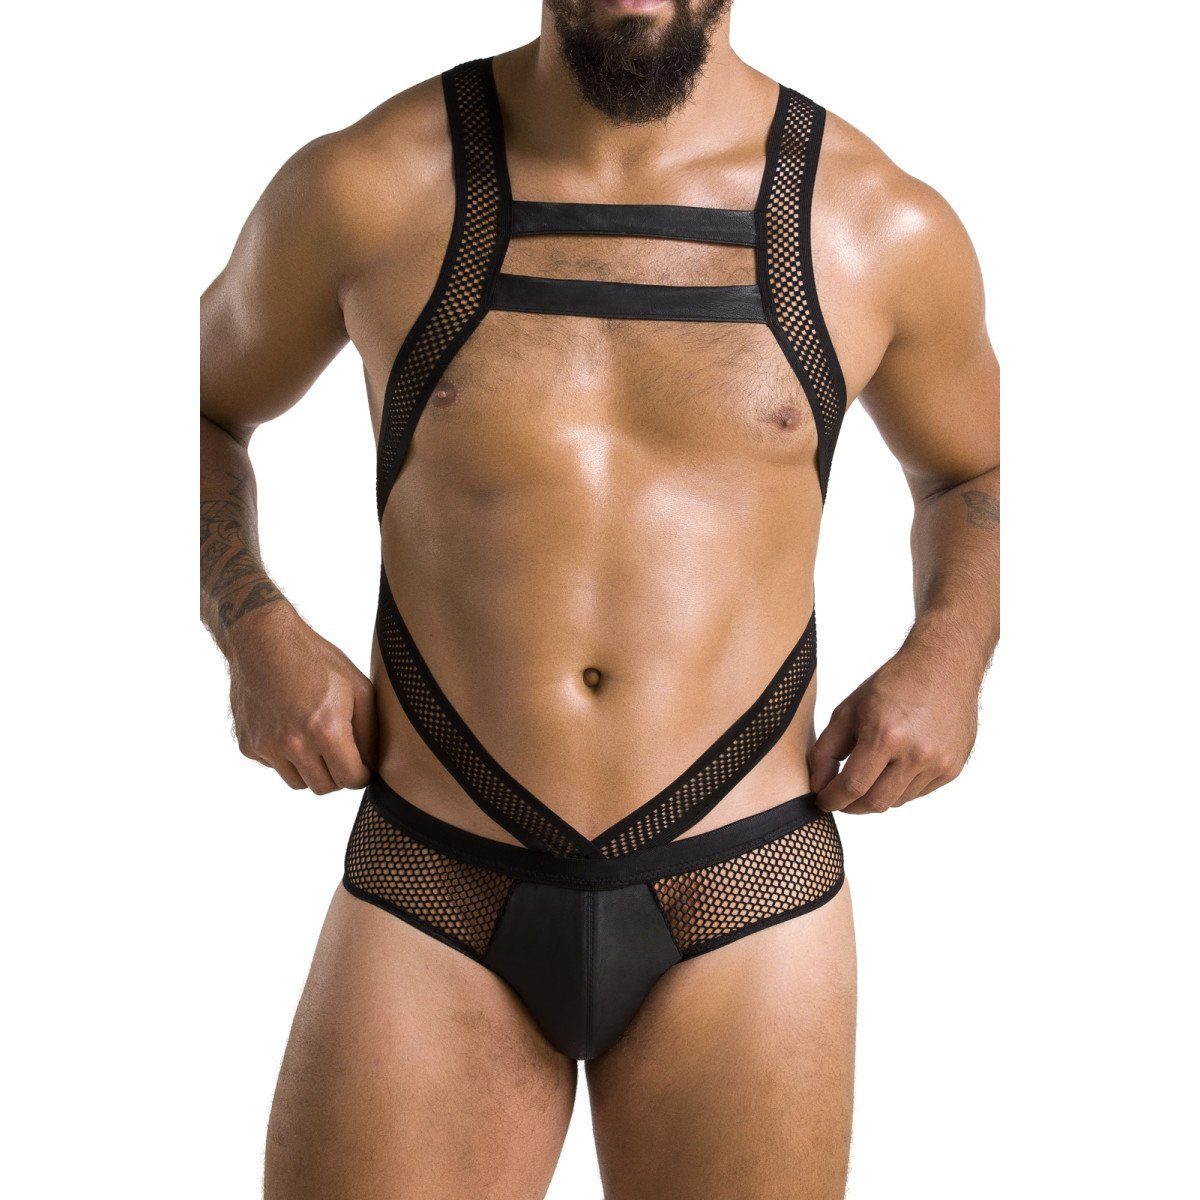 Passion Menswear Body PM VICTOR black (L/XL,S/M,XXL) - 045 body